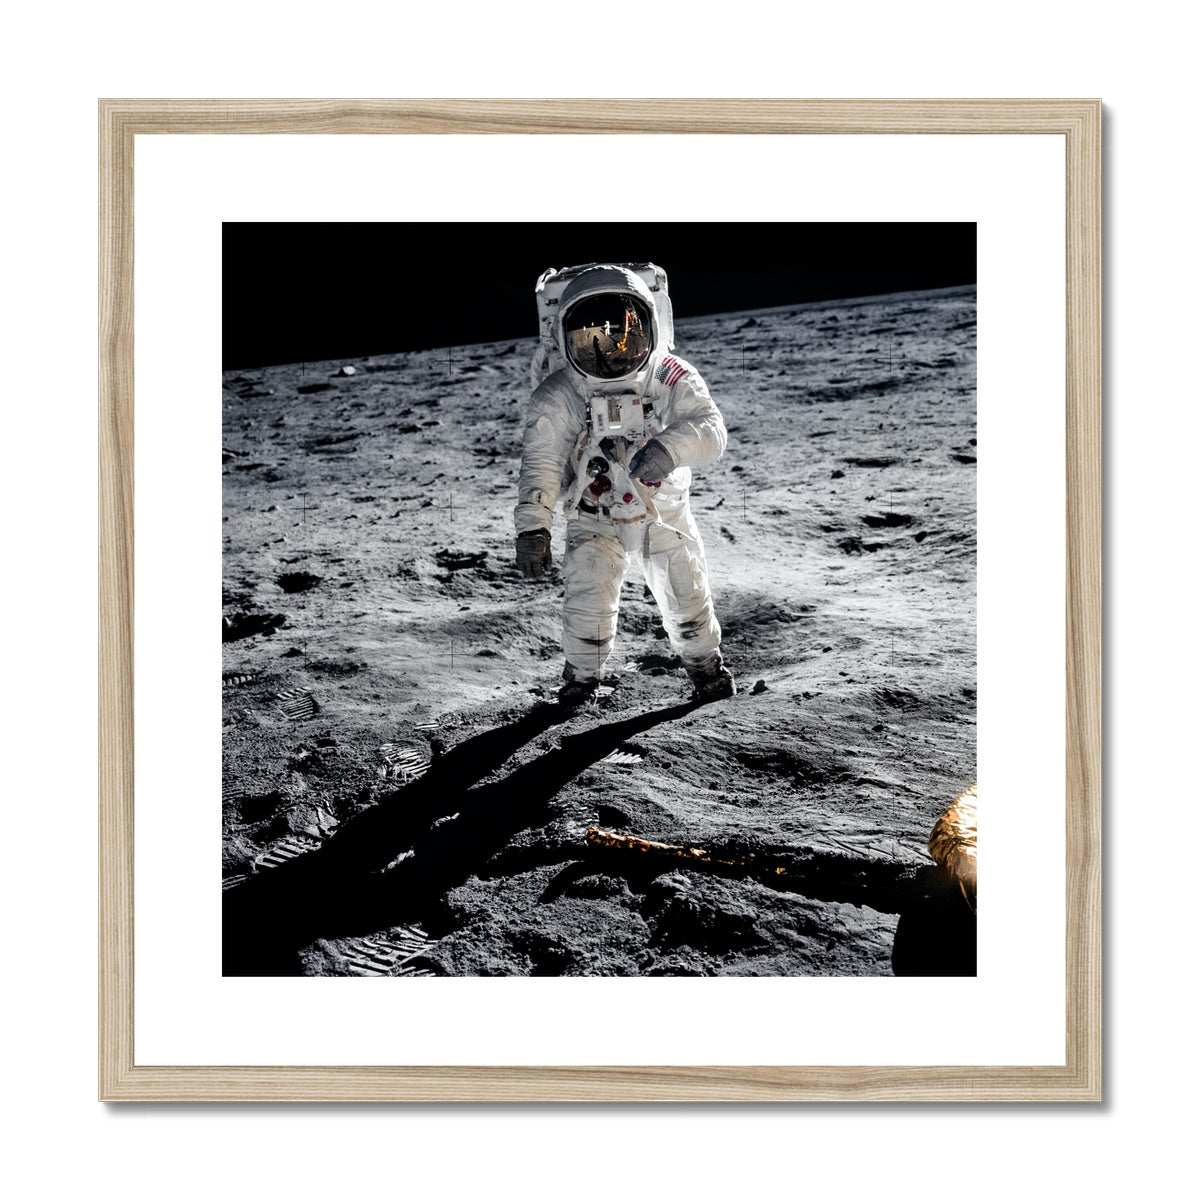 Aldrin's EVA Framed & Mounted Print